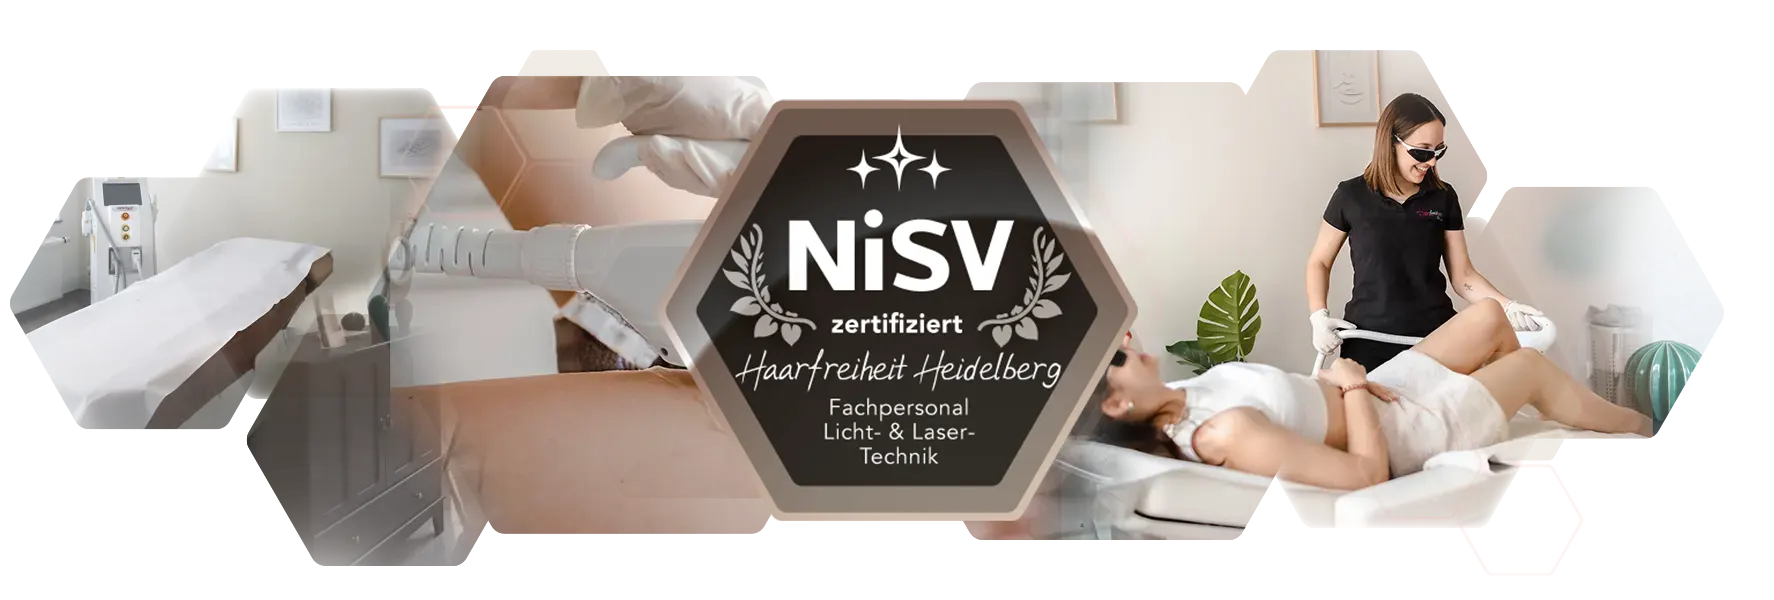 Bannerbild Behanldung NiSV zertifziertes Personal Technologie Übersicht